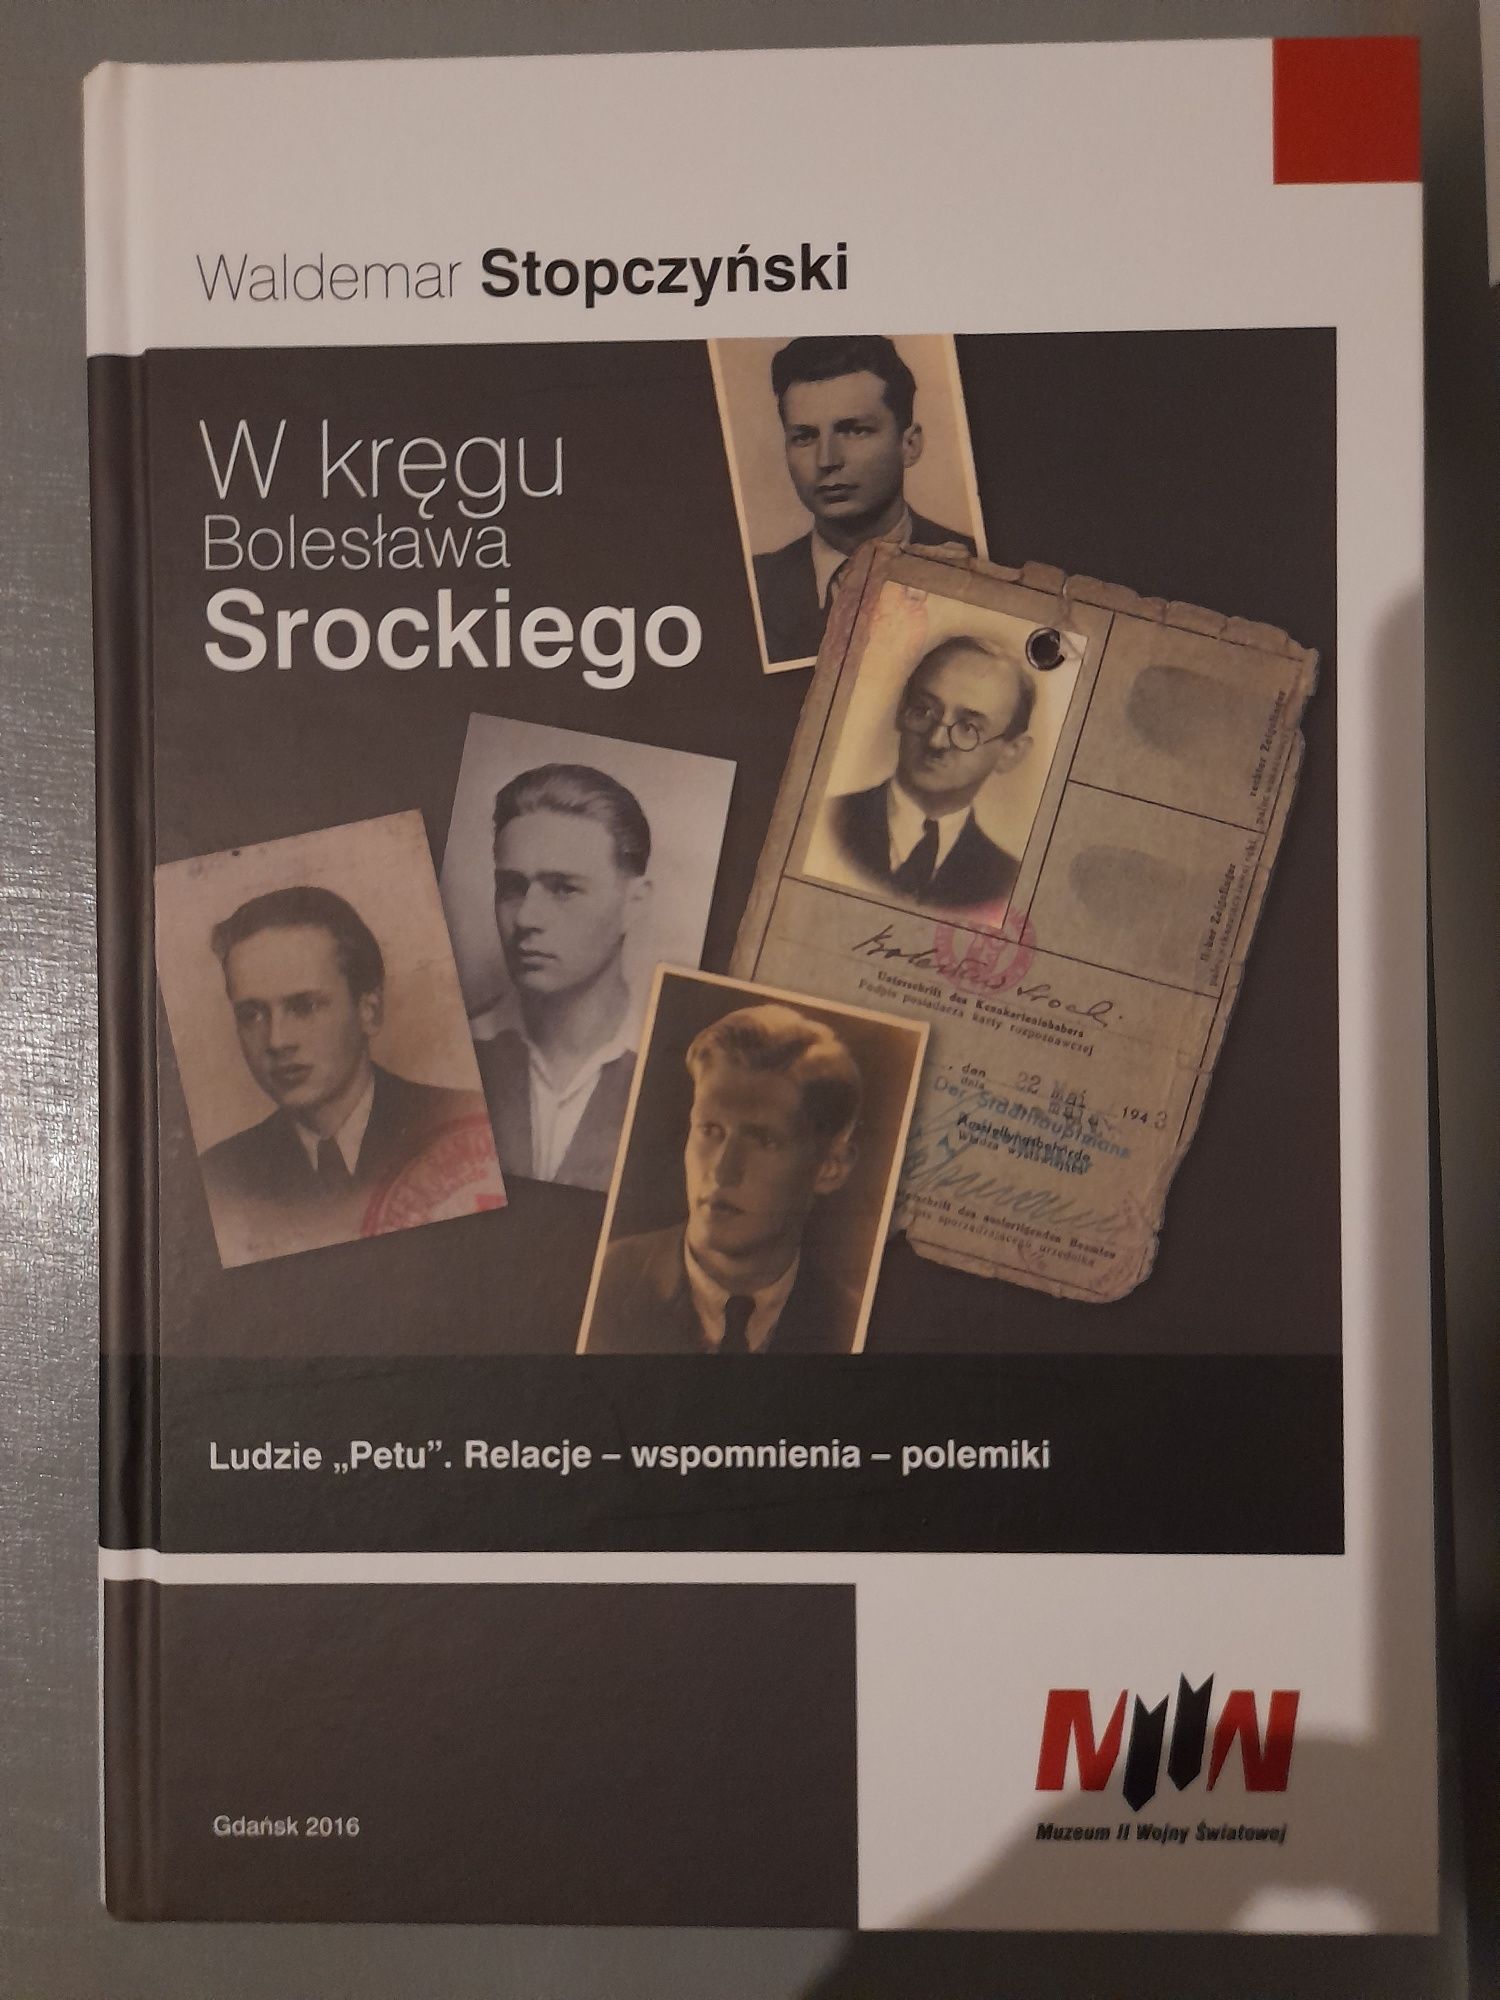 Waldemar Stopczyński "W kręgu  Bolesława Srockiego"